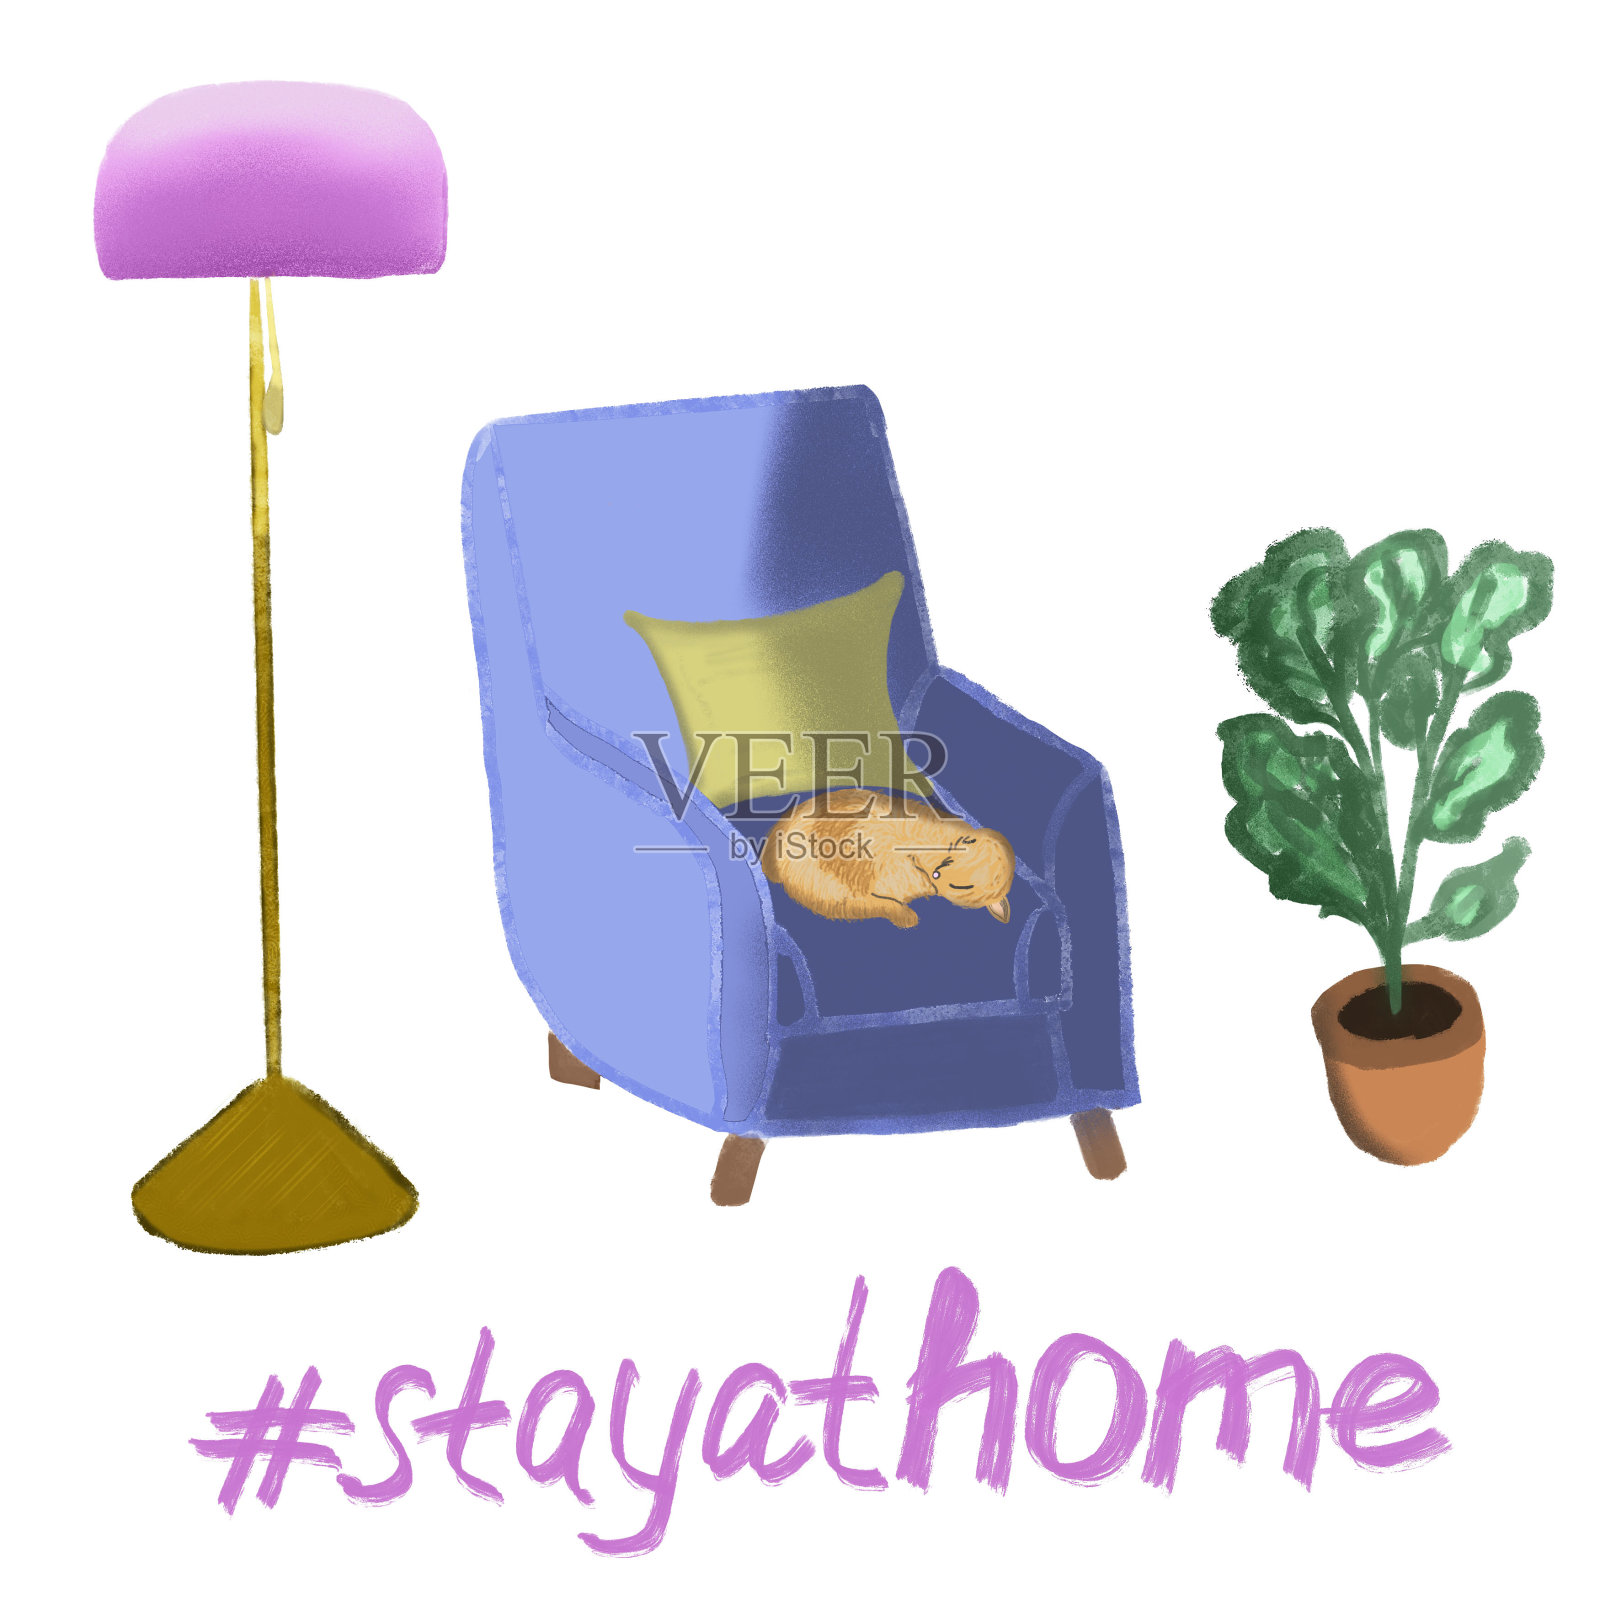 待在家里，发短信，写字。蓝色的扶手椅，金黄色和粉红色的火炬，红色的小猫睡在椅子上，花瓶与家植物。室内设计插画图片素材